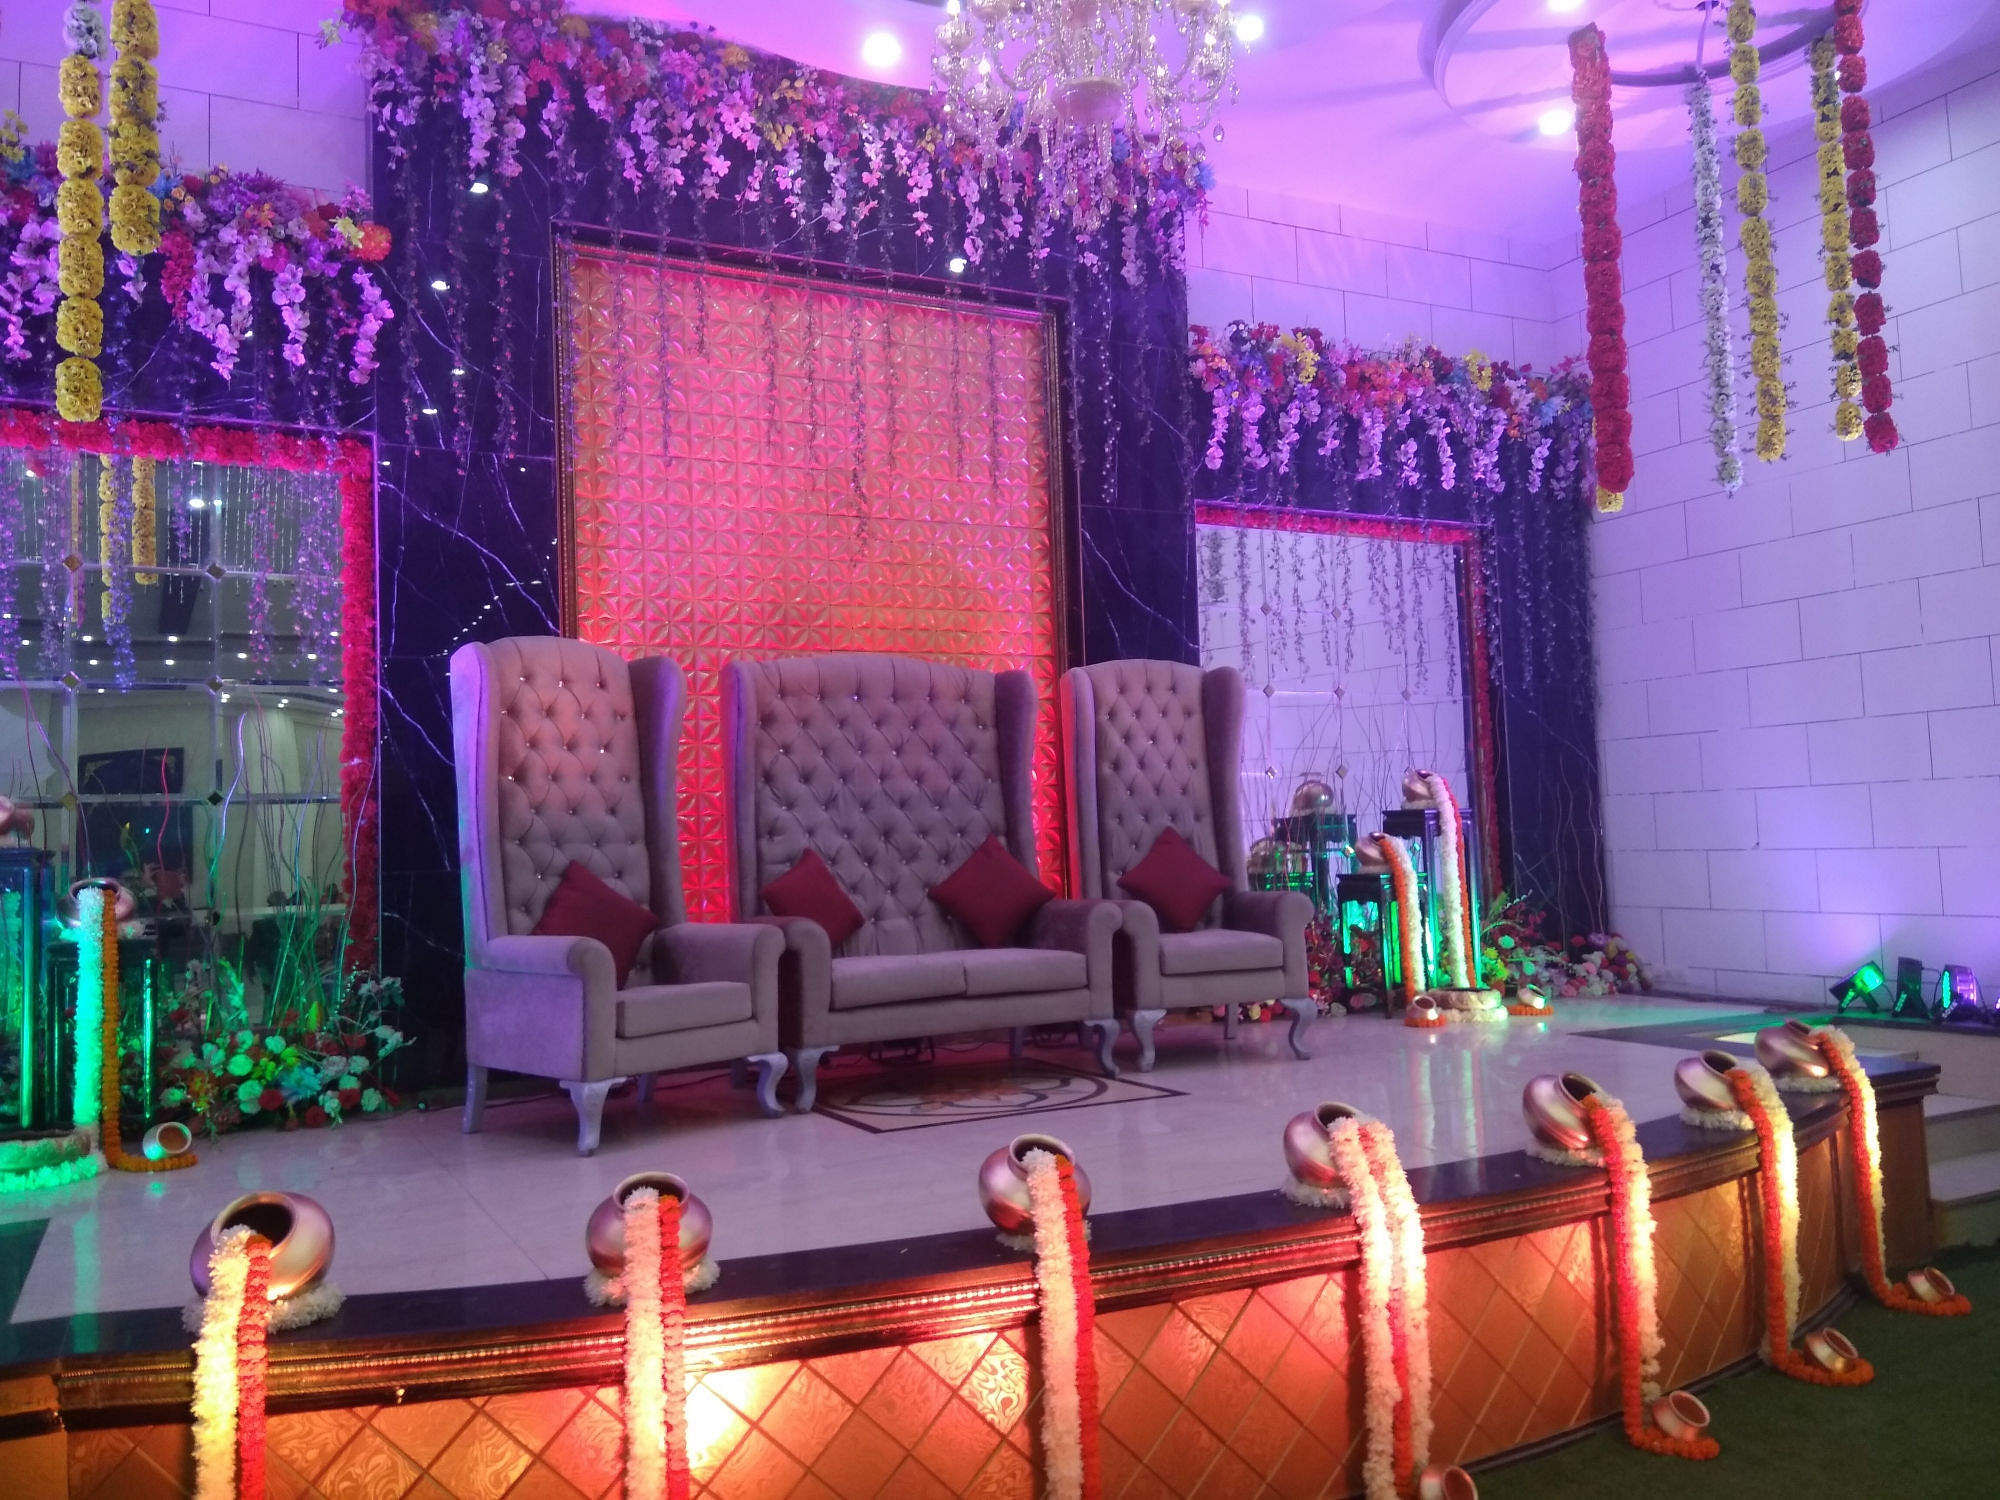 Kangna Grand Banquet in Uttam Nagar, Delhi